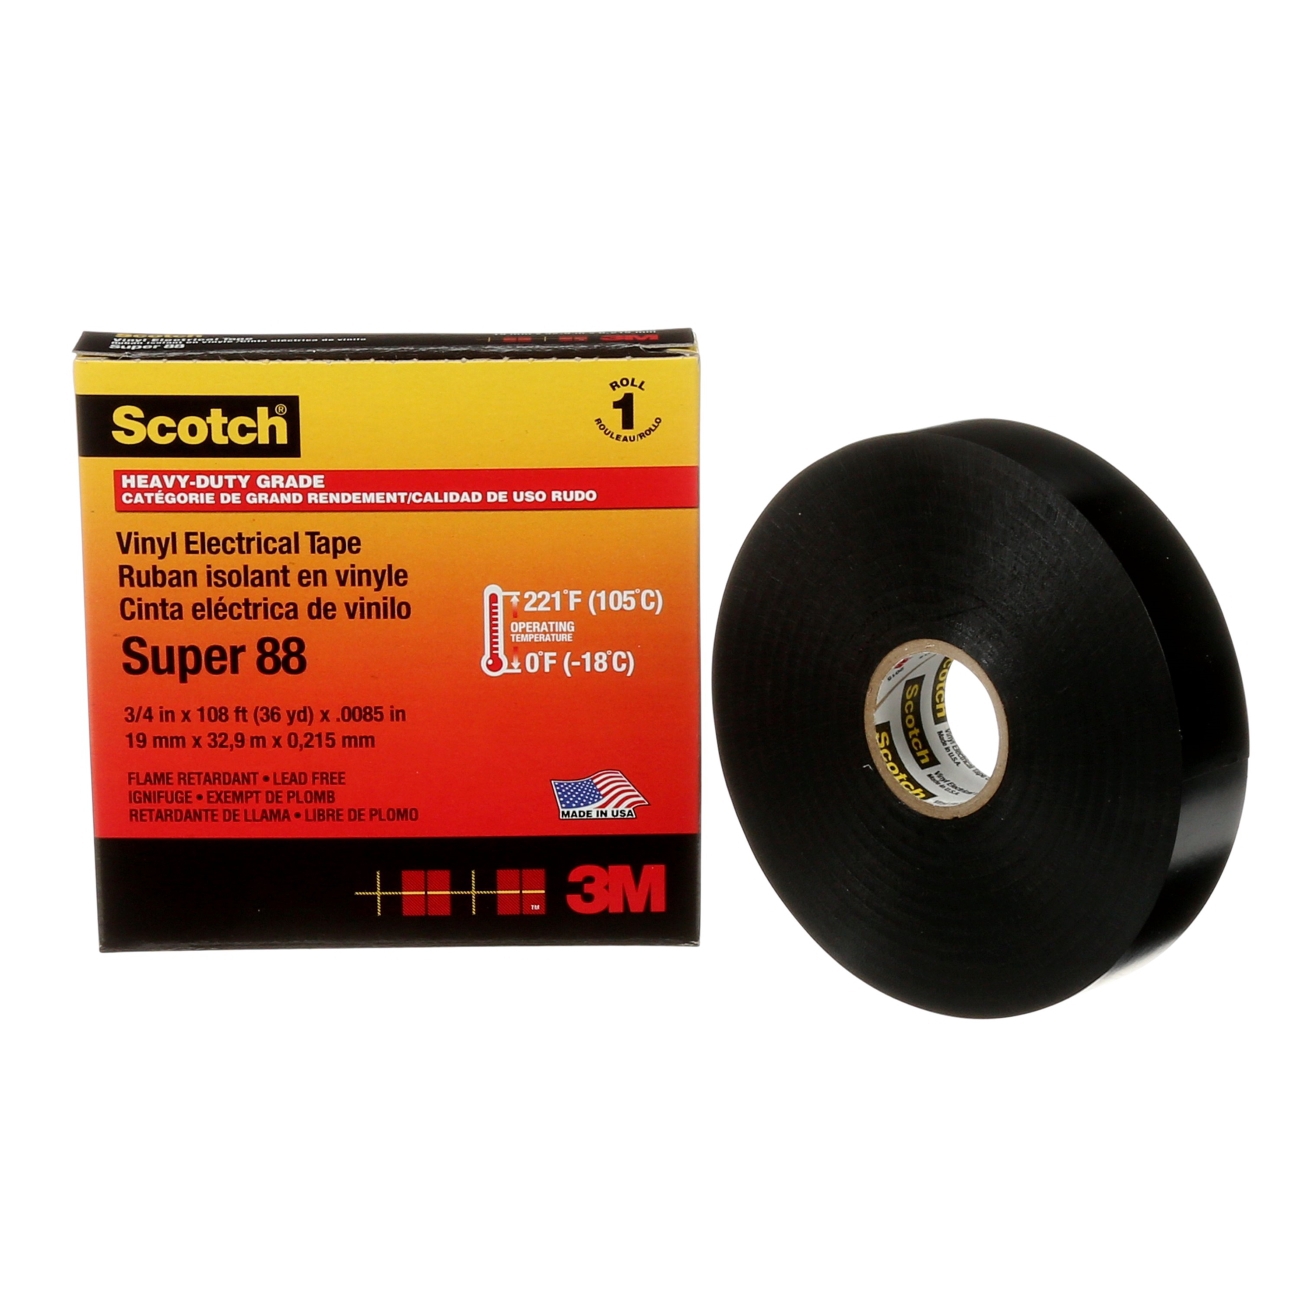 3M Scotch Super 88 Vinyl ruban électrique isolant, noir 19 mm x 20 m, 0,22 mm